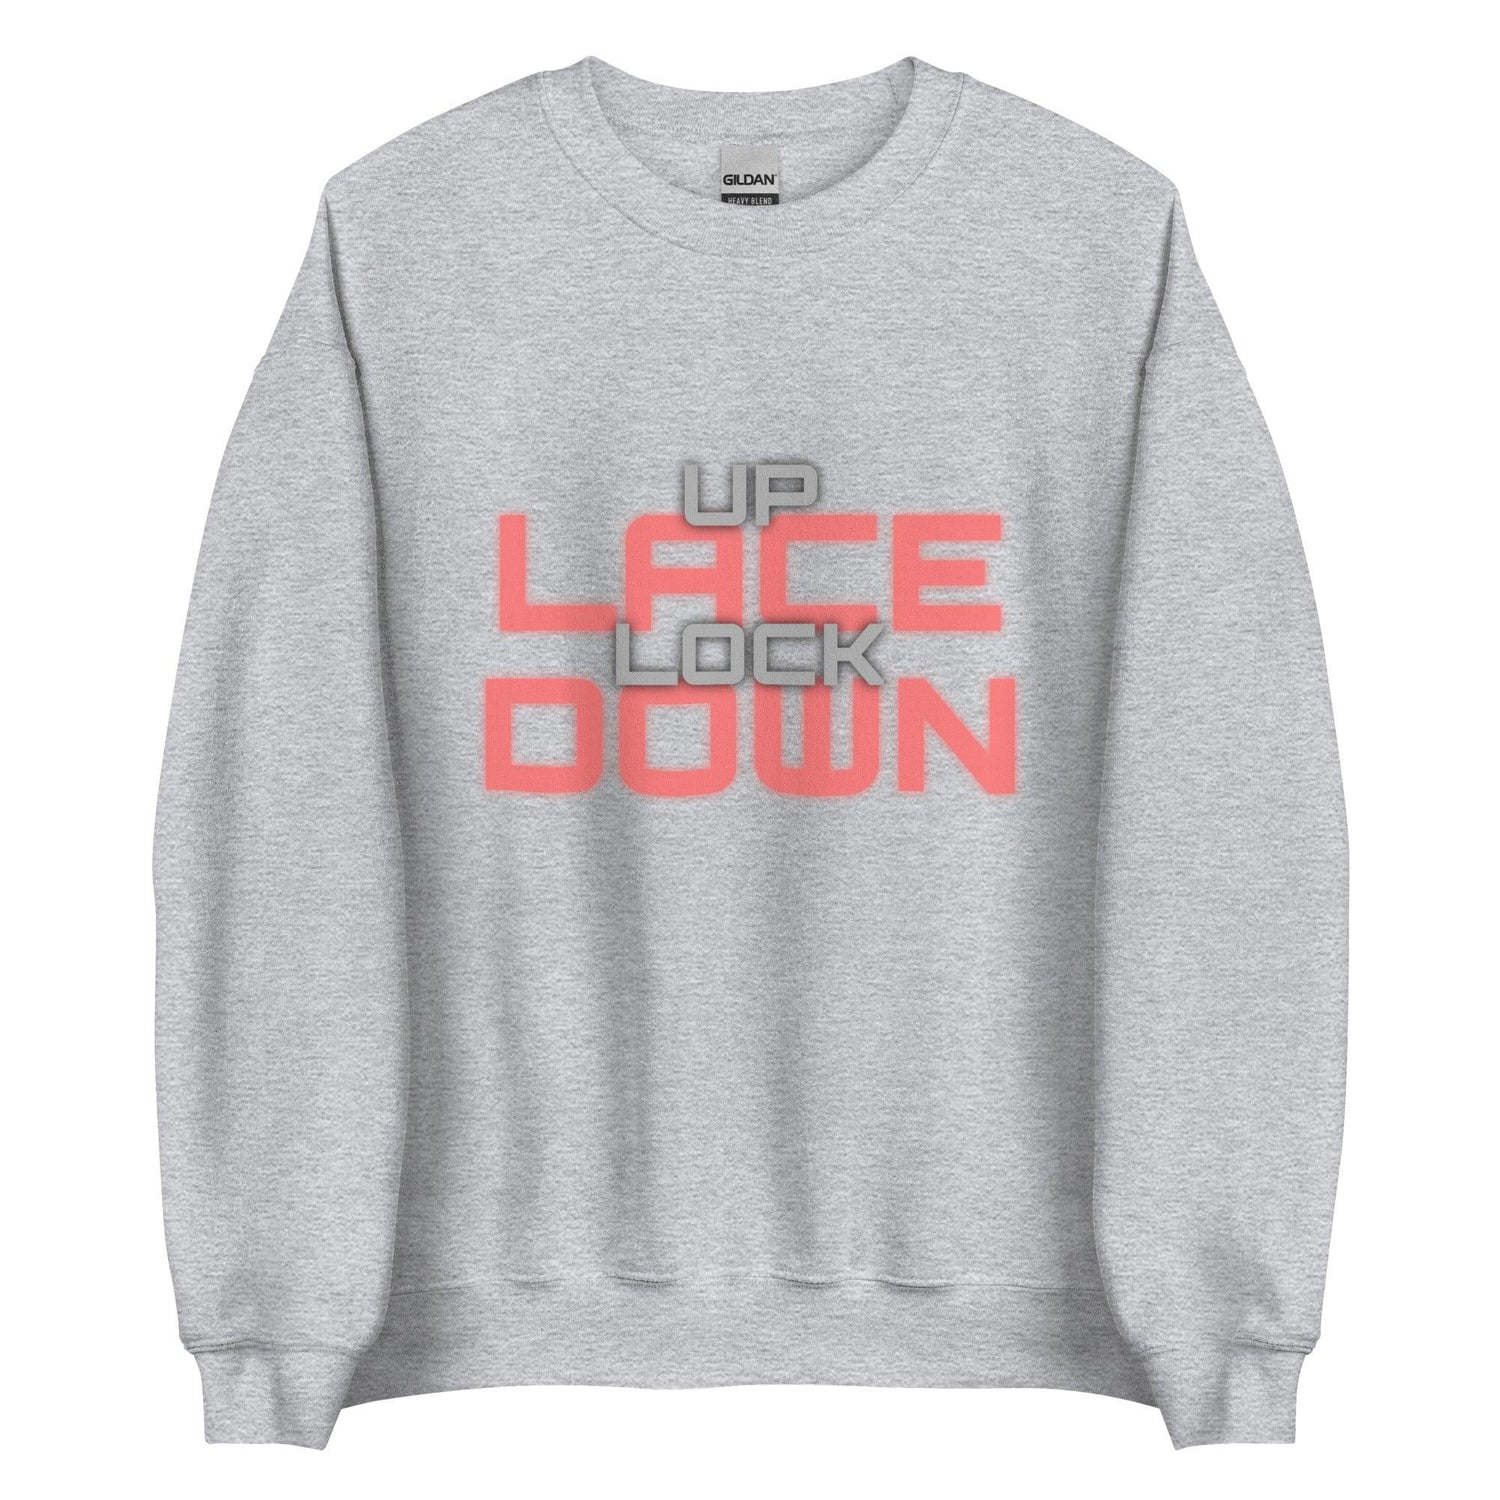 Angelo Sharpless "Lace Up Lock Down" Sweatshirt - Fan Arch